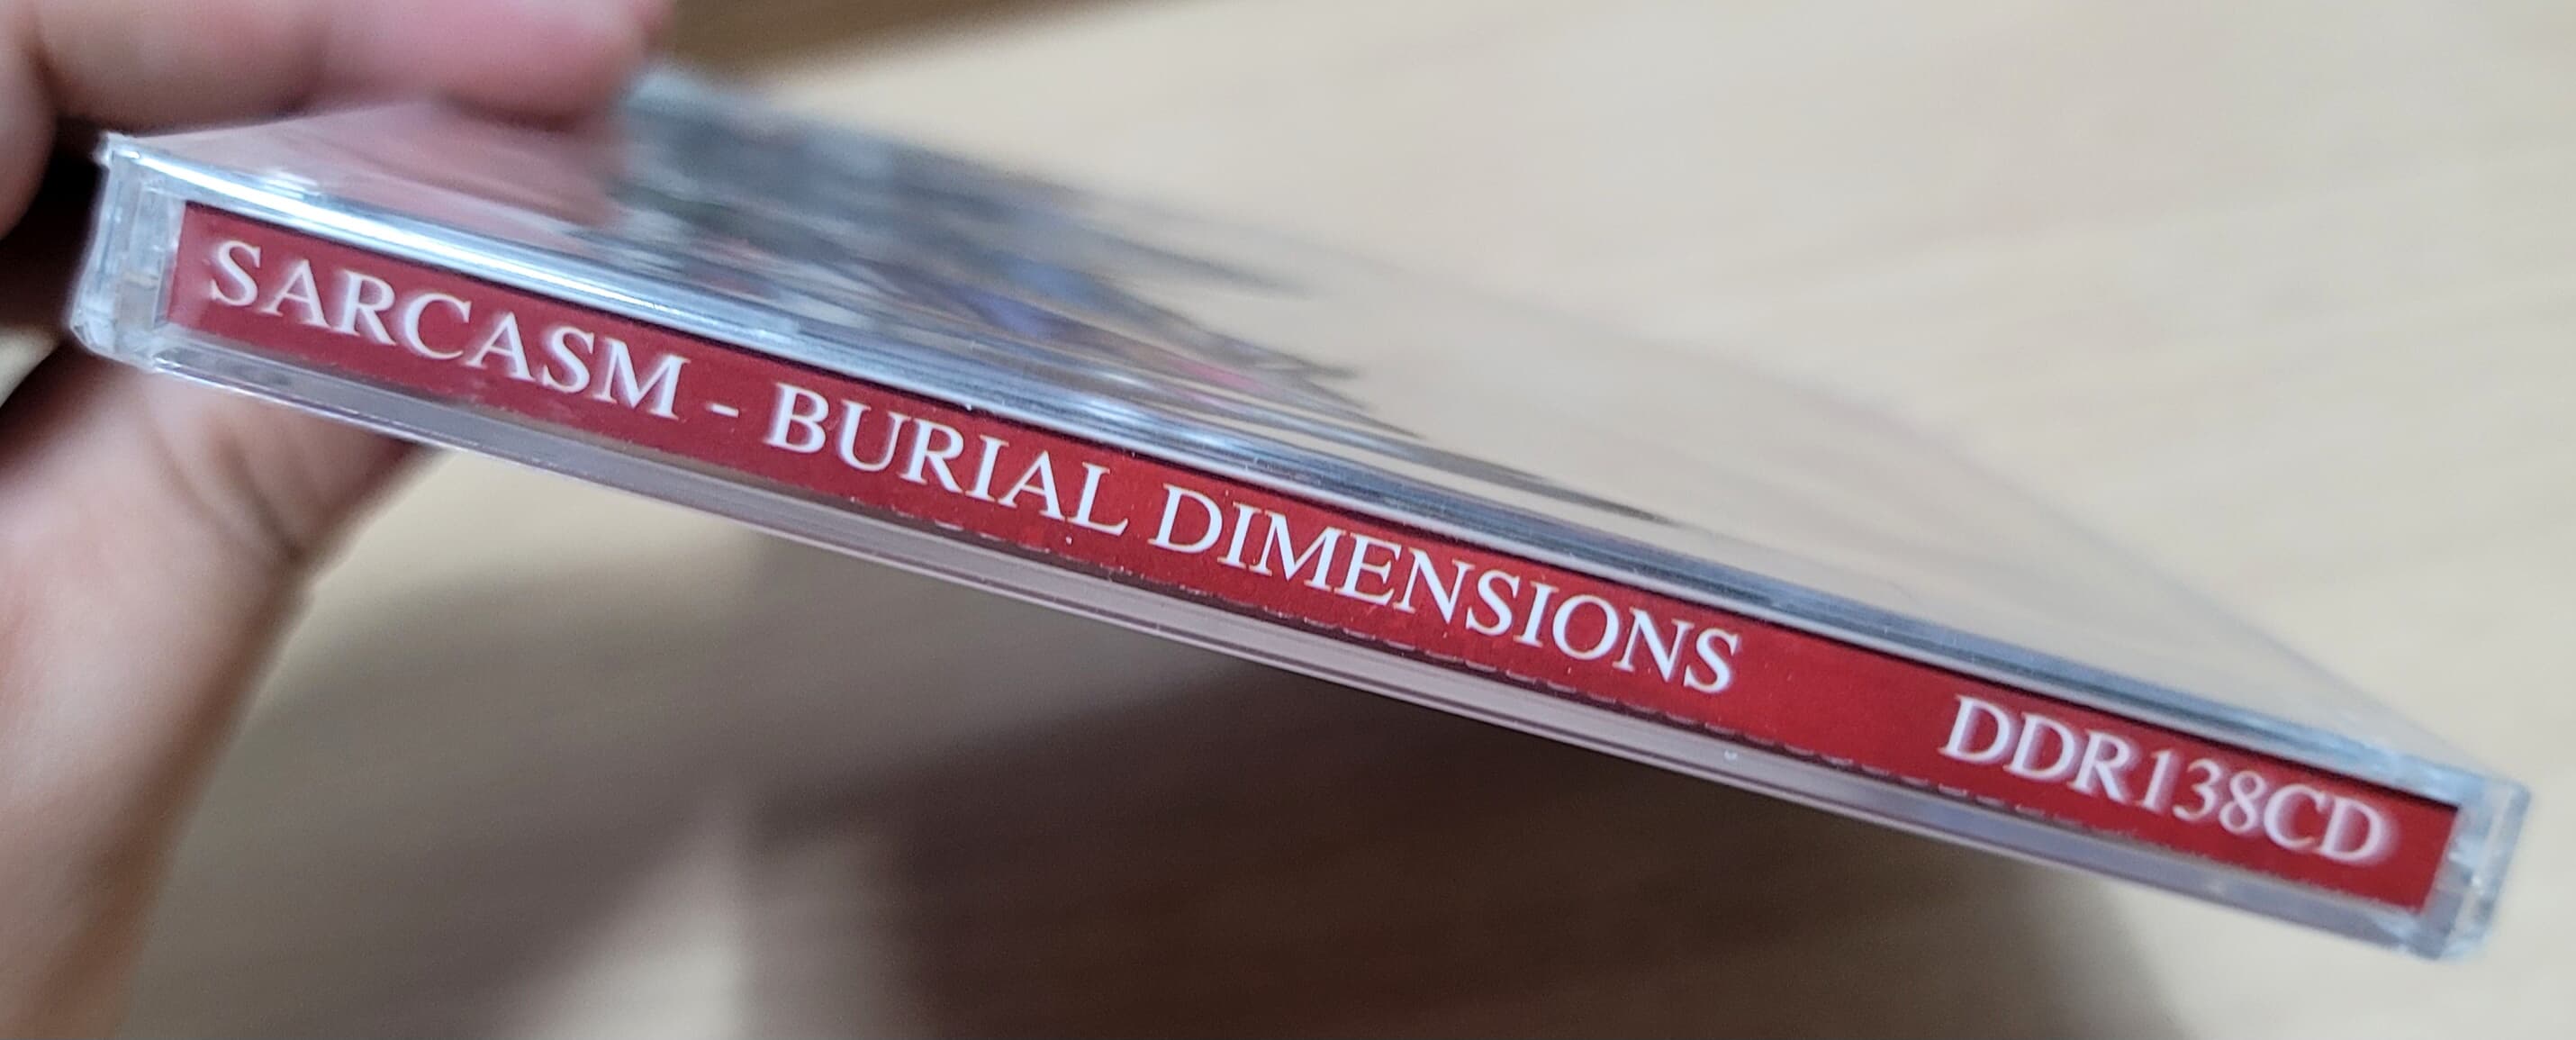 (미개봉 2CD 수입반) Sarcasm - Burial Dimensions